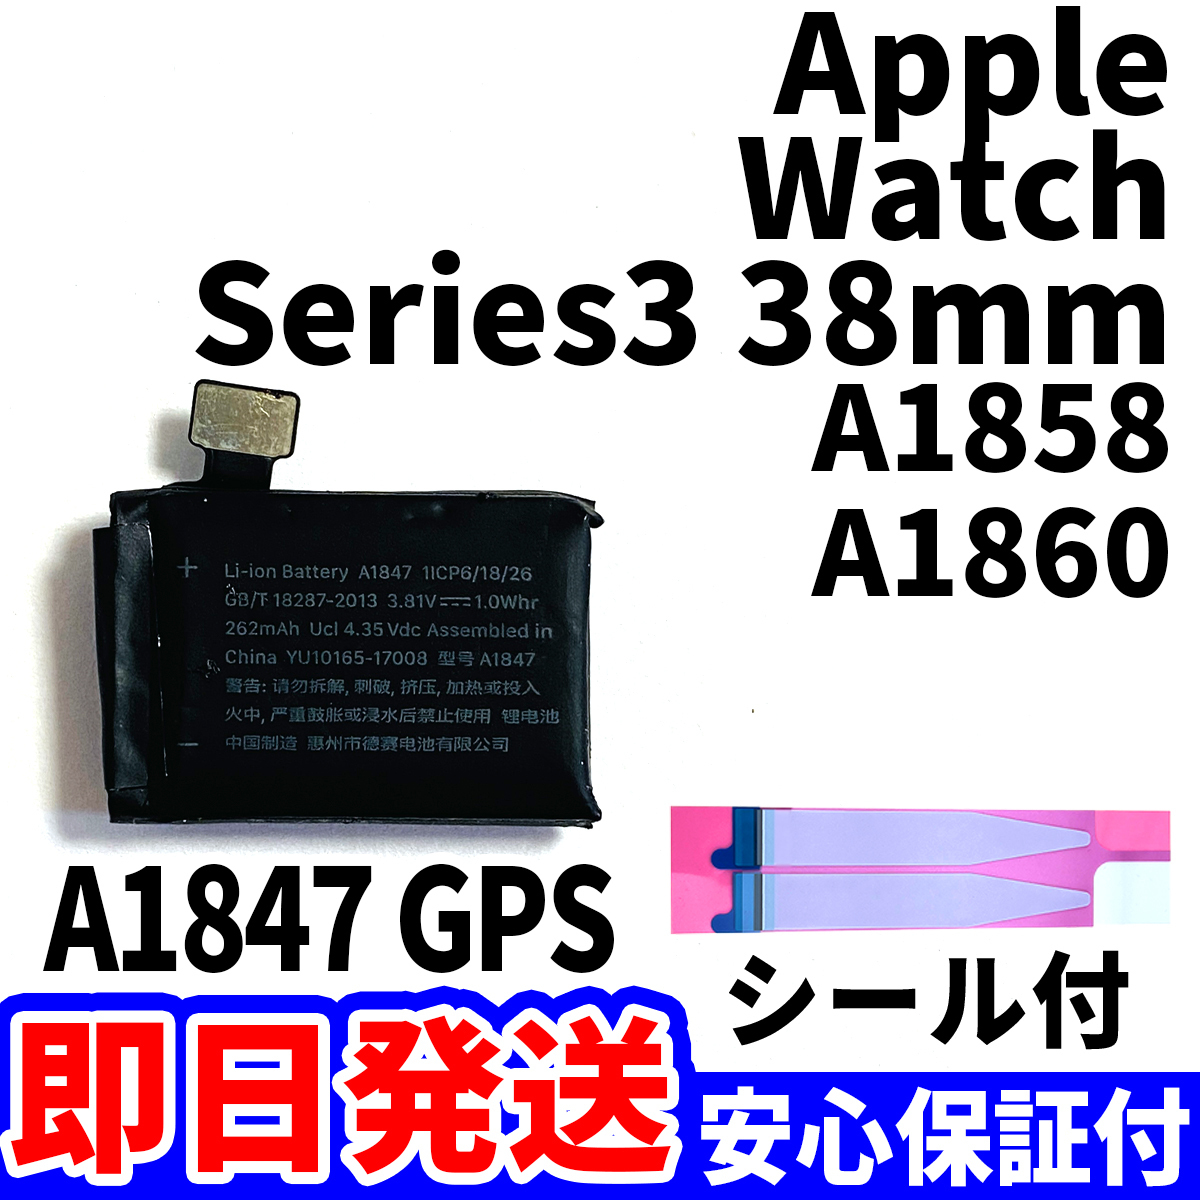  внутренний отправка в тот же день! оригинальный такой же и т.п. новый товар!Apple Watch Series3 38mm GPS аккумулятор A1847 A1858 блок батарей встроенный battery двусторонний лента инструмент нет батарейка одиночный товар 